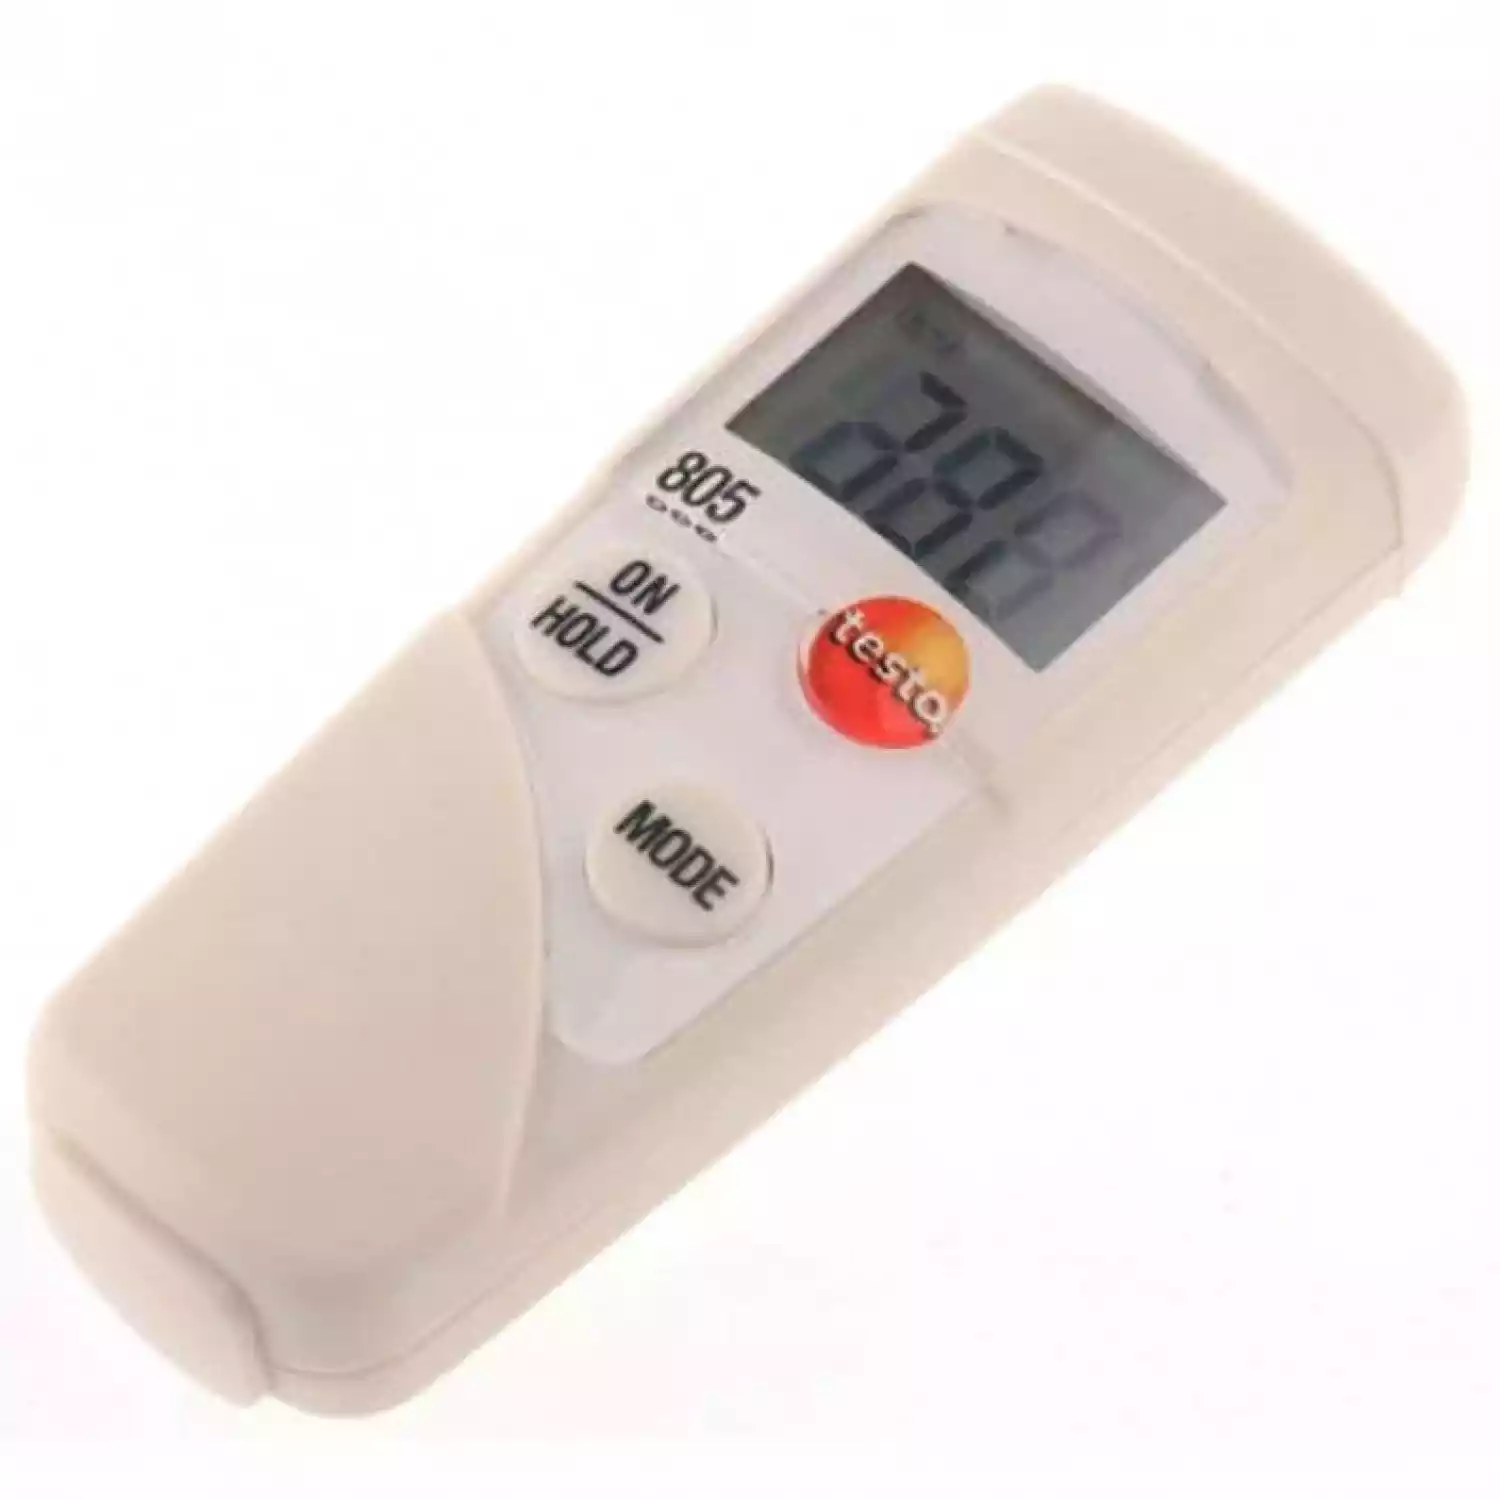 Testo 805 мини-термометр карманный инфракрасный - 4